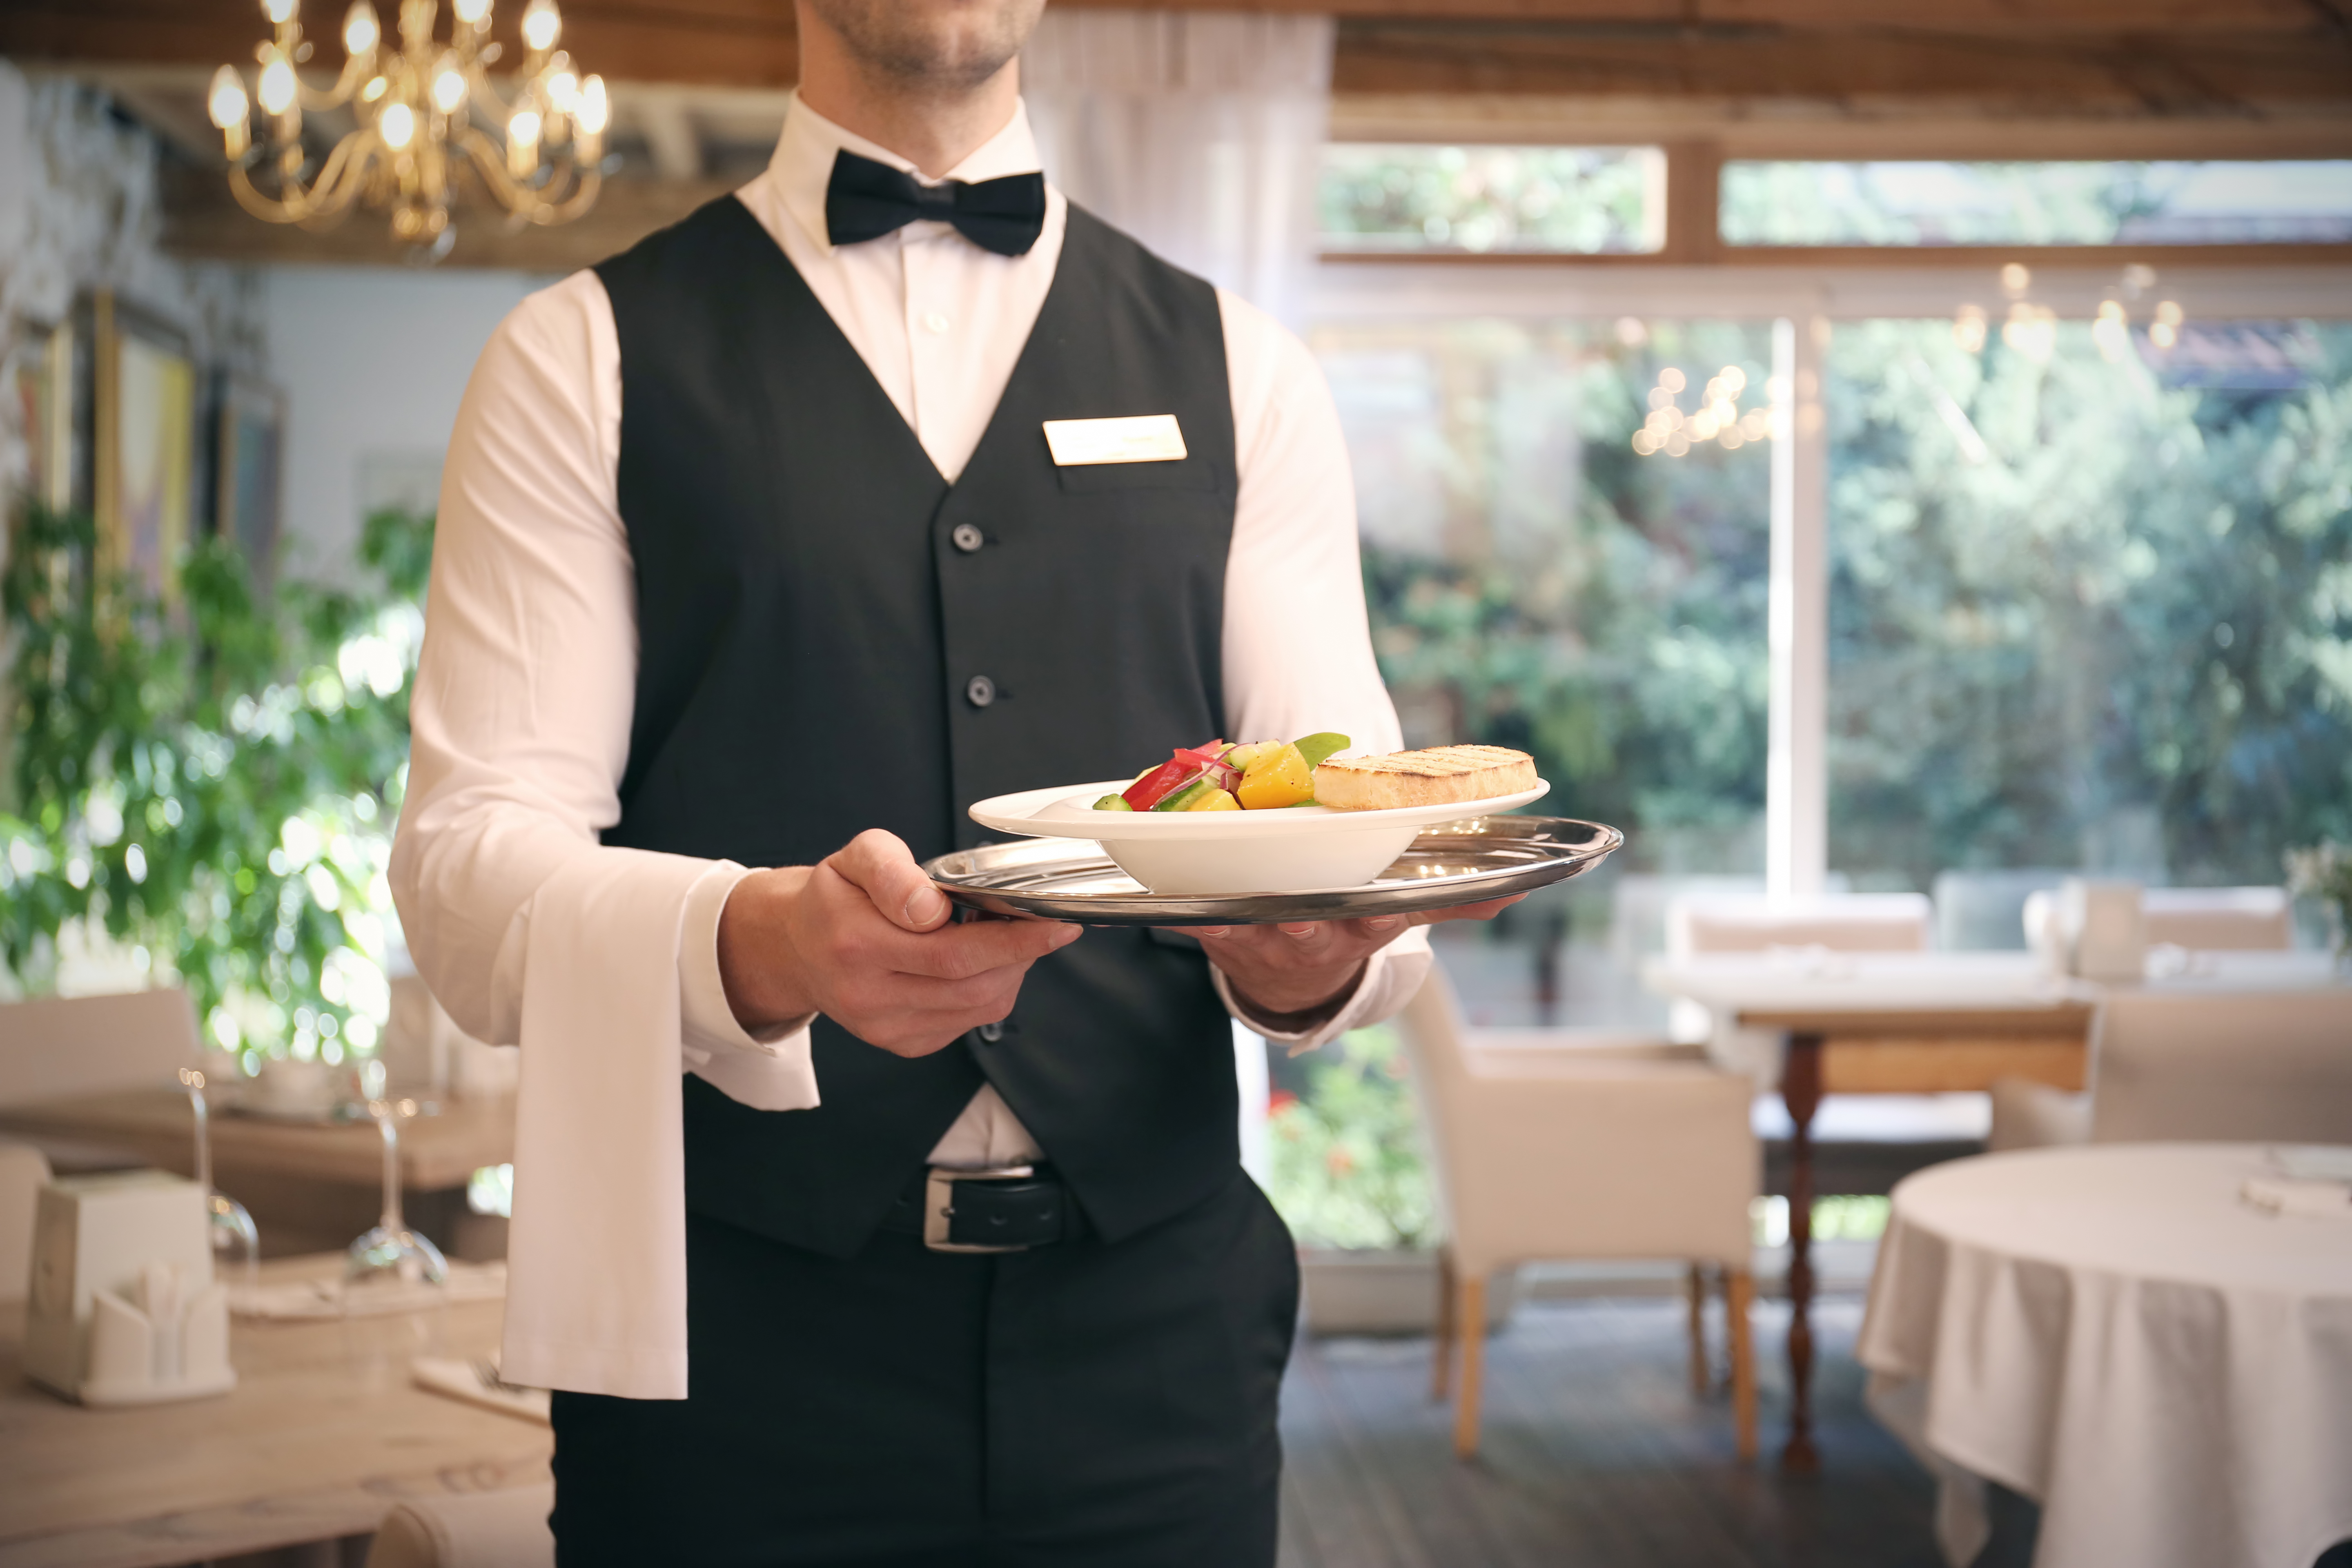 Un serveur sert la nourriture dans le restaurant | Source : Shutterstock